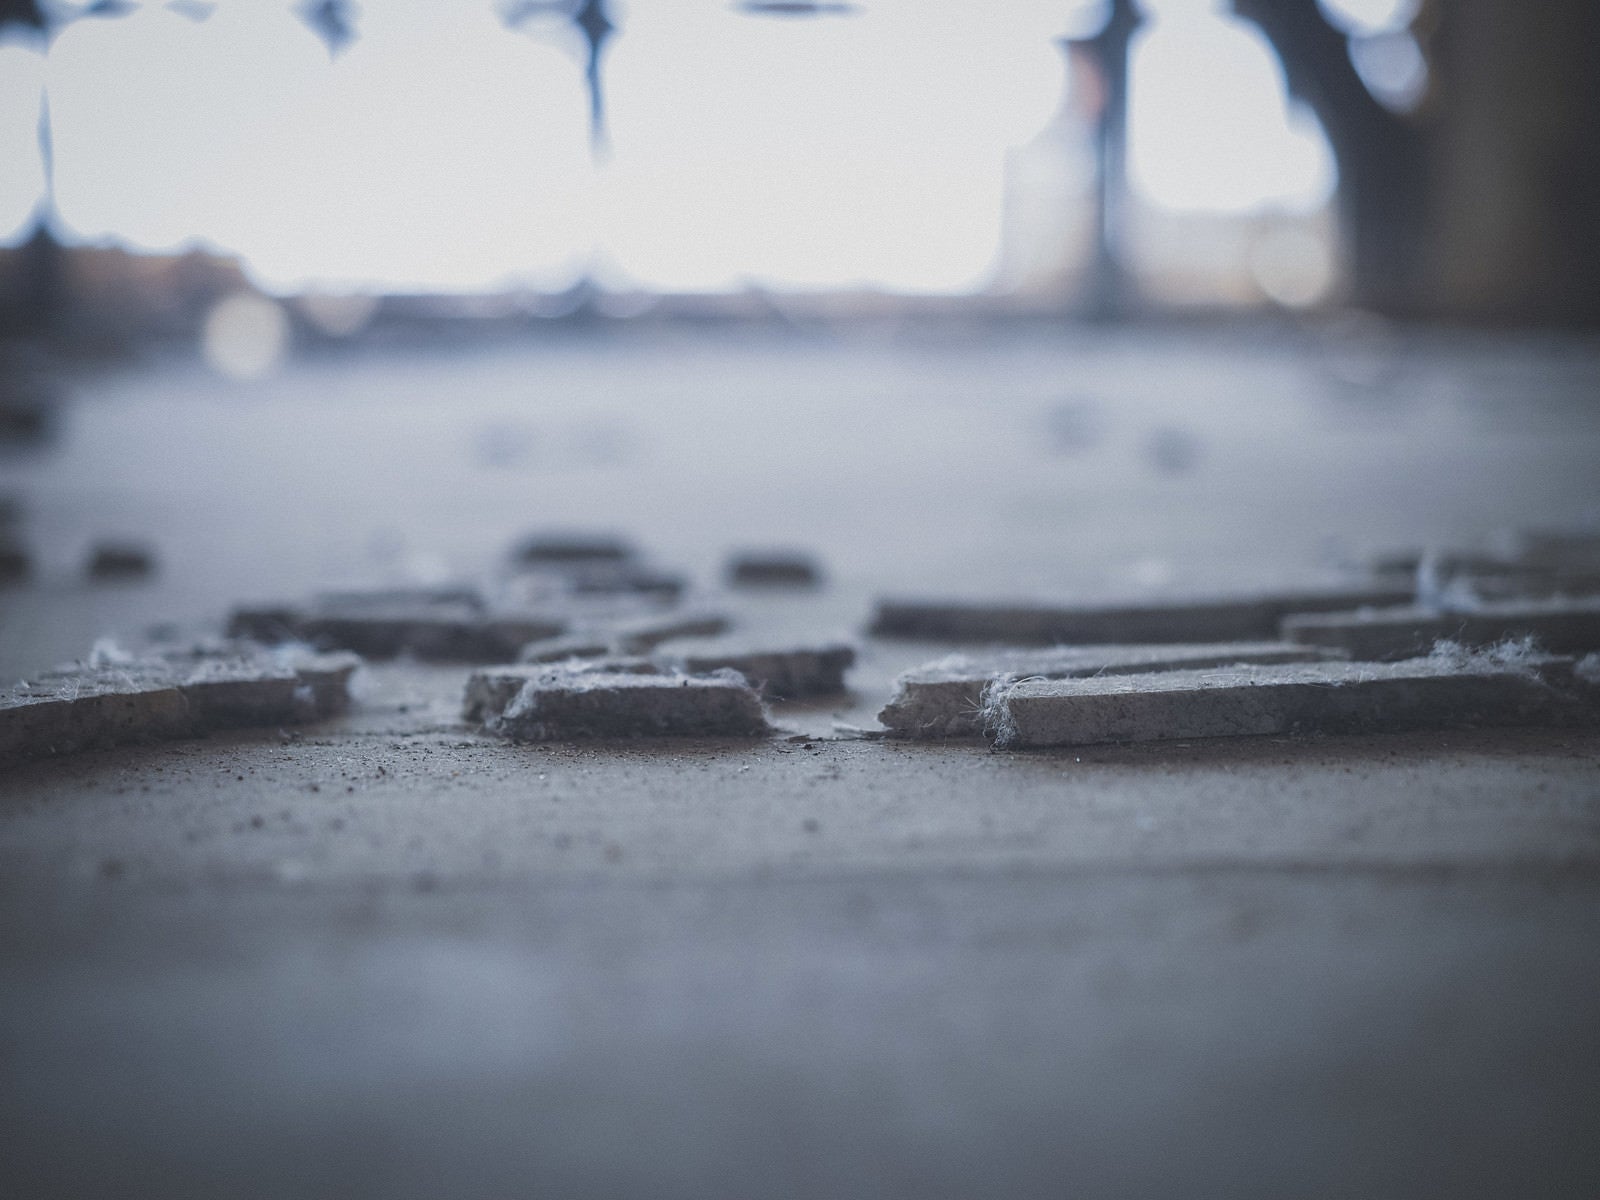 「廃墟の床に残るコンクリート片」の写真